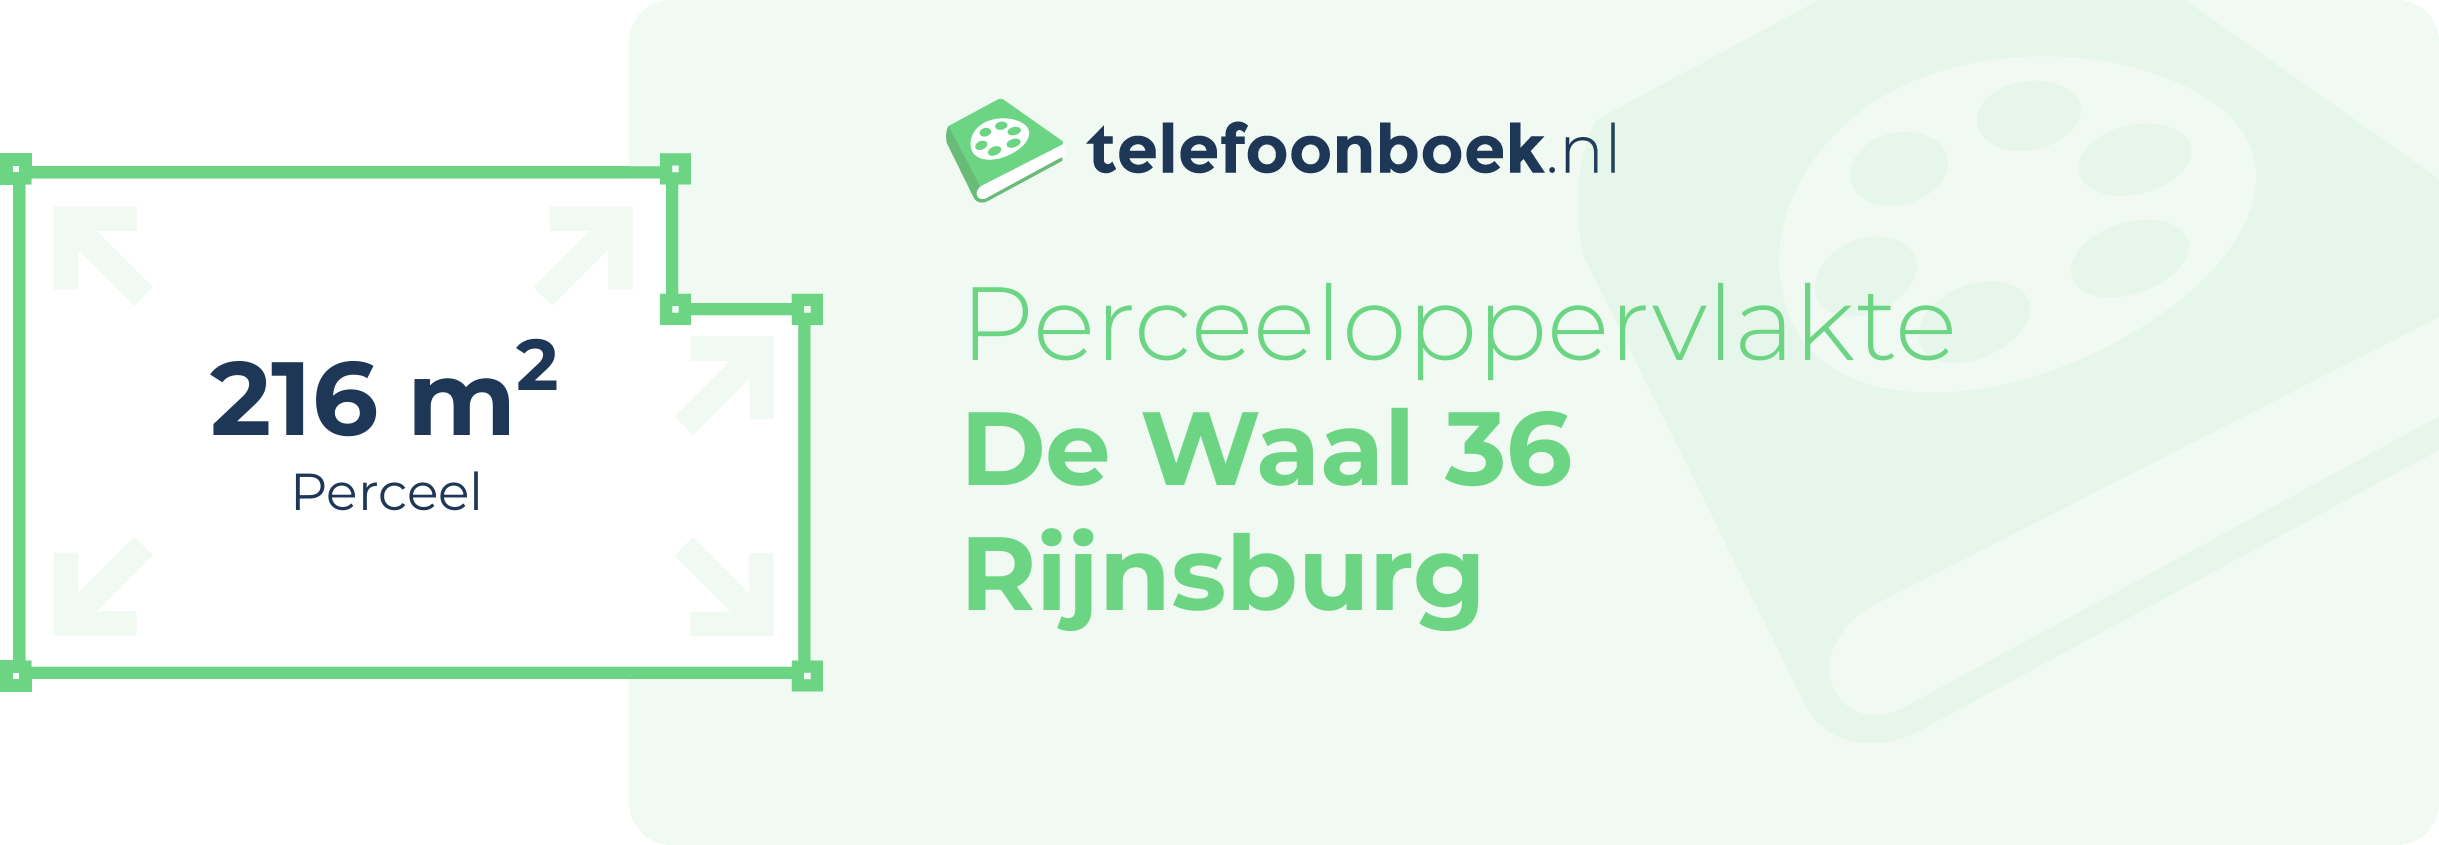 Perceeloppervlakte De Waal 36 Rijnsburg